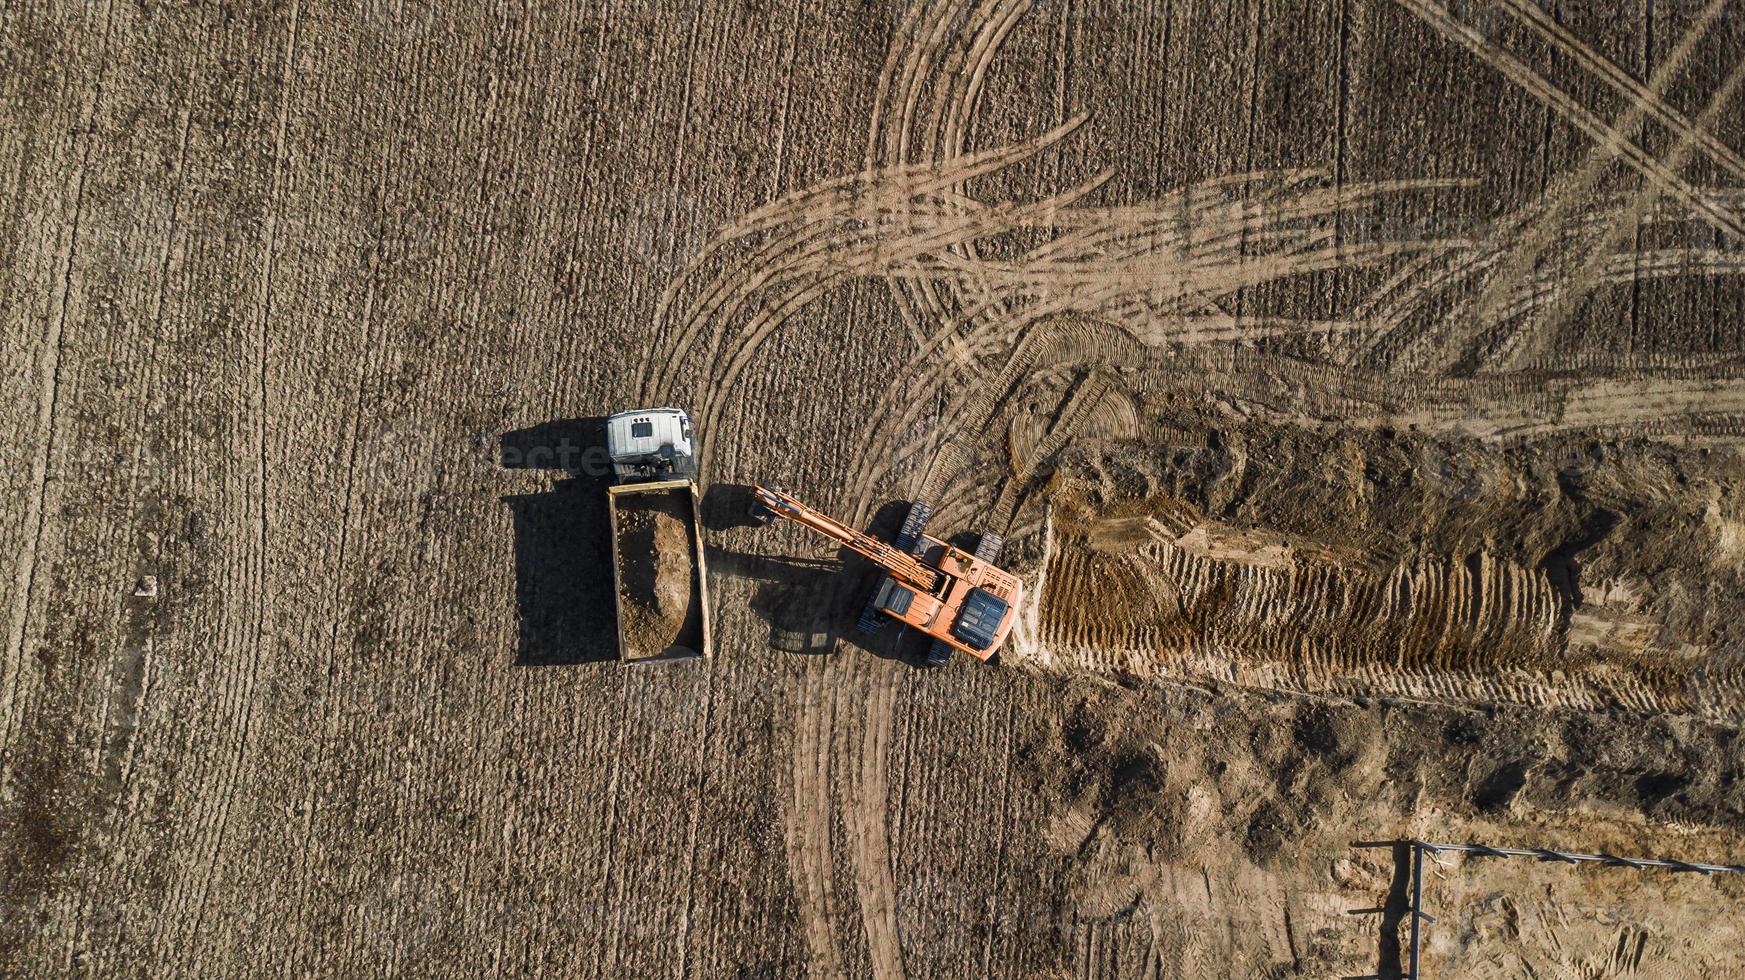 l'escavatore carica la vista aerea del camion dall'alto con il drone foto